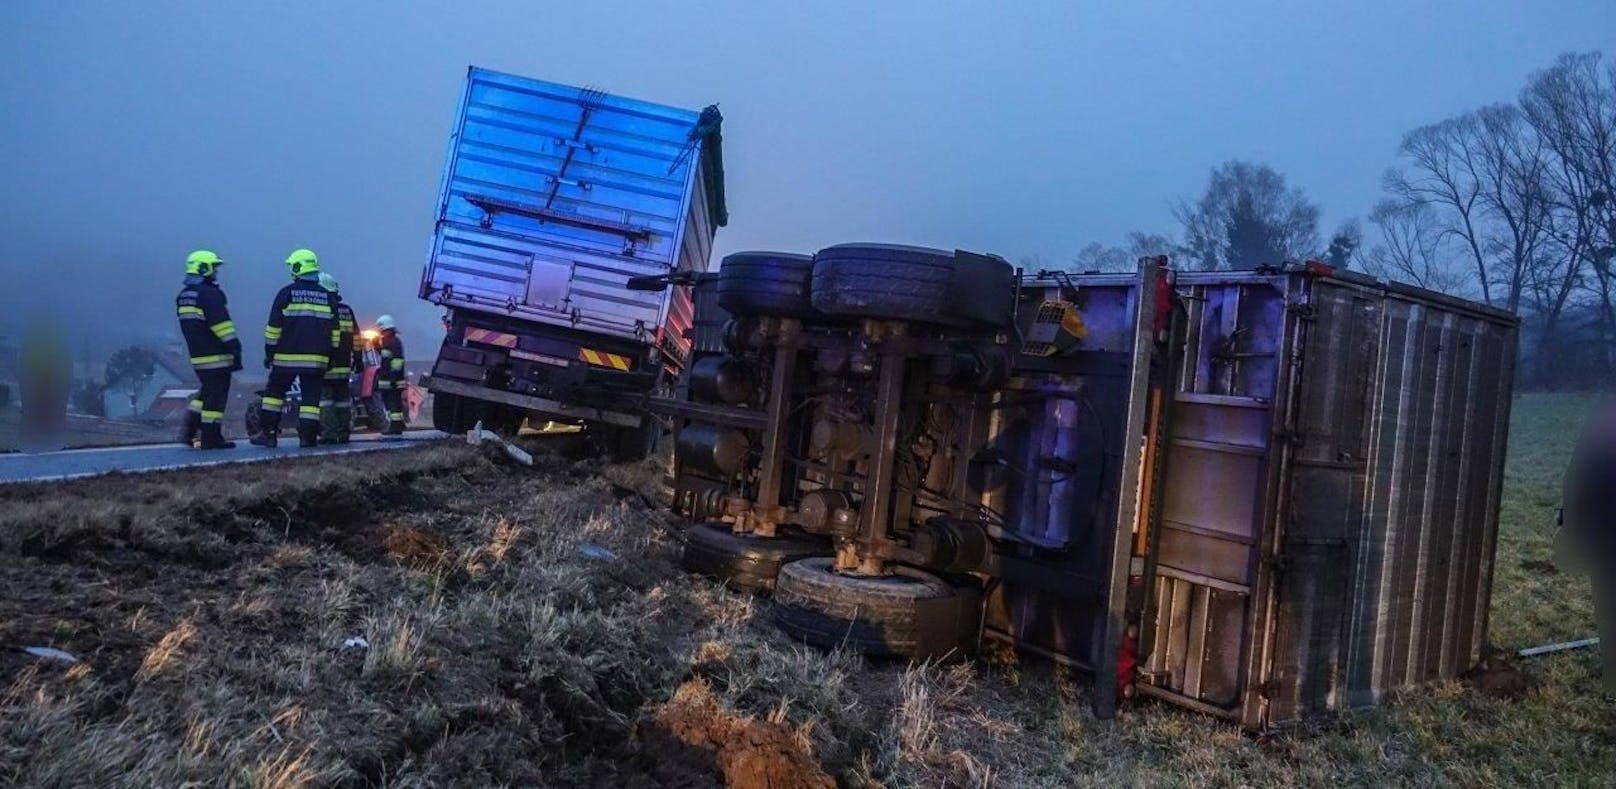 Spektakulärer Unfall auf B55: Lastzug kracht in Pkw